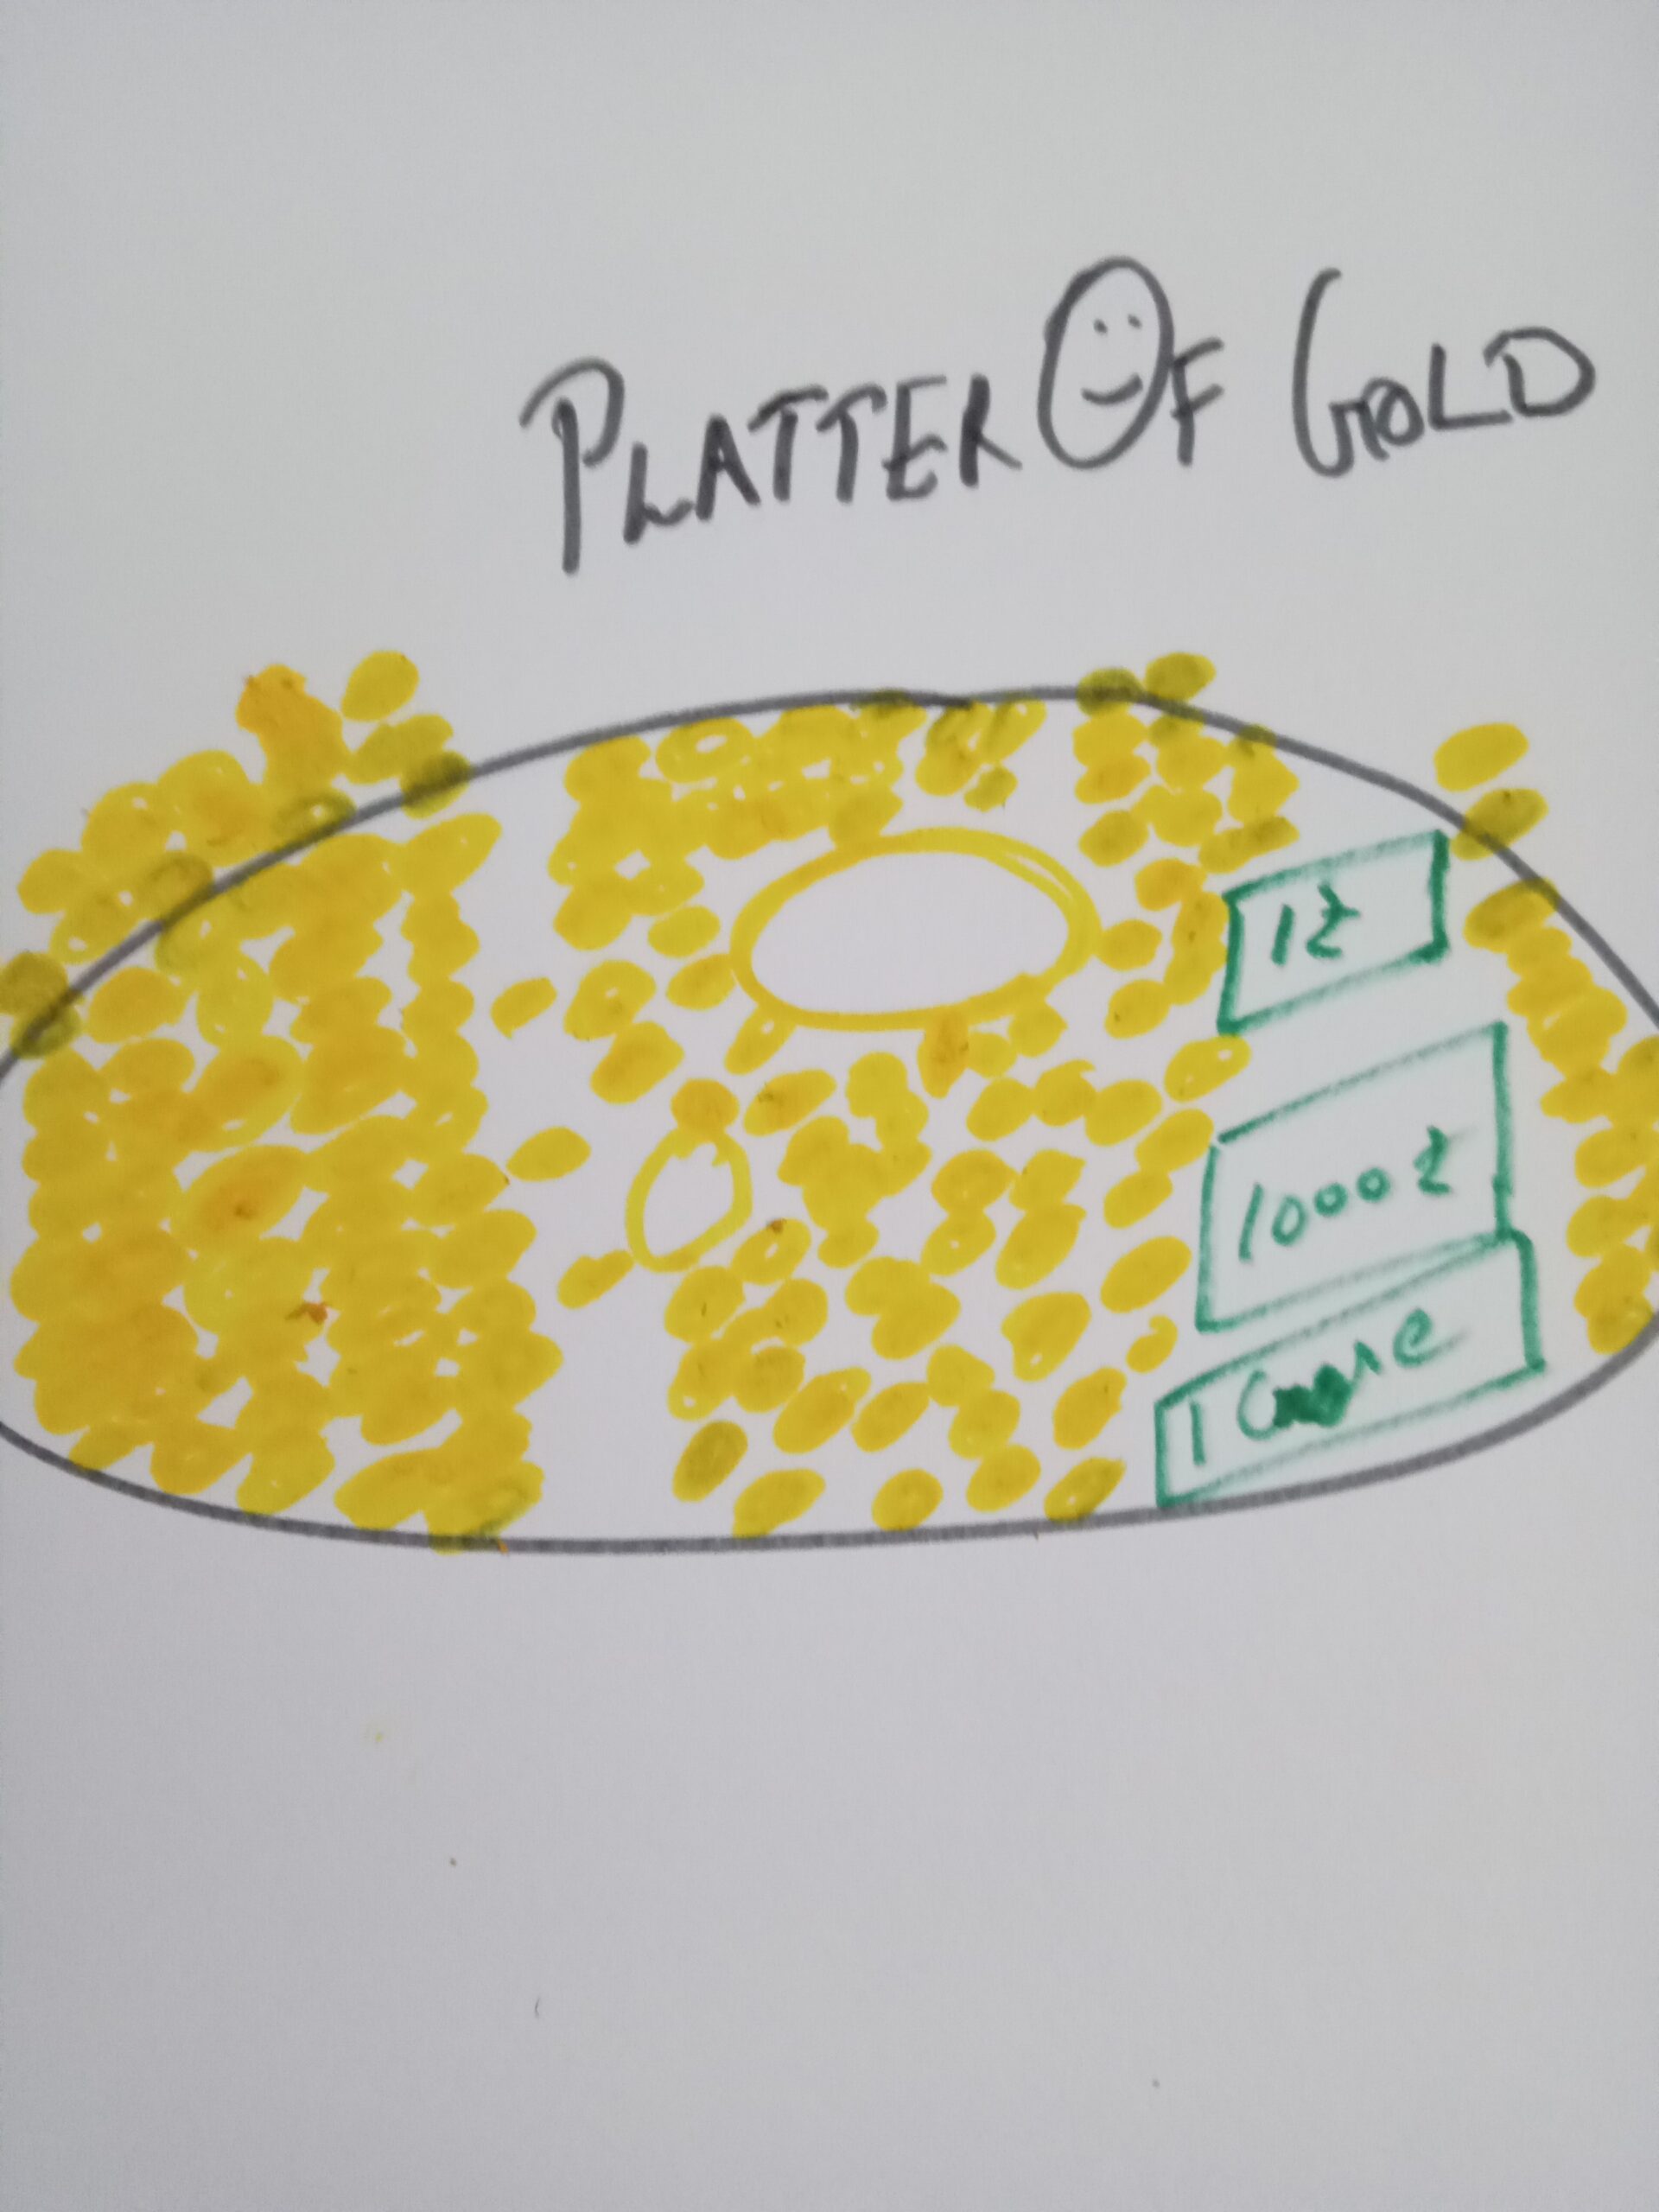 Platter of gold